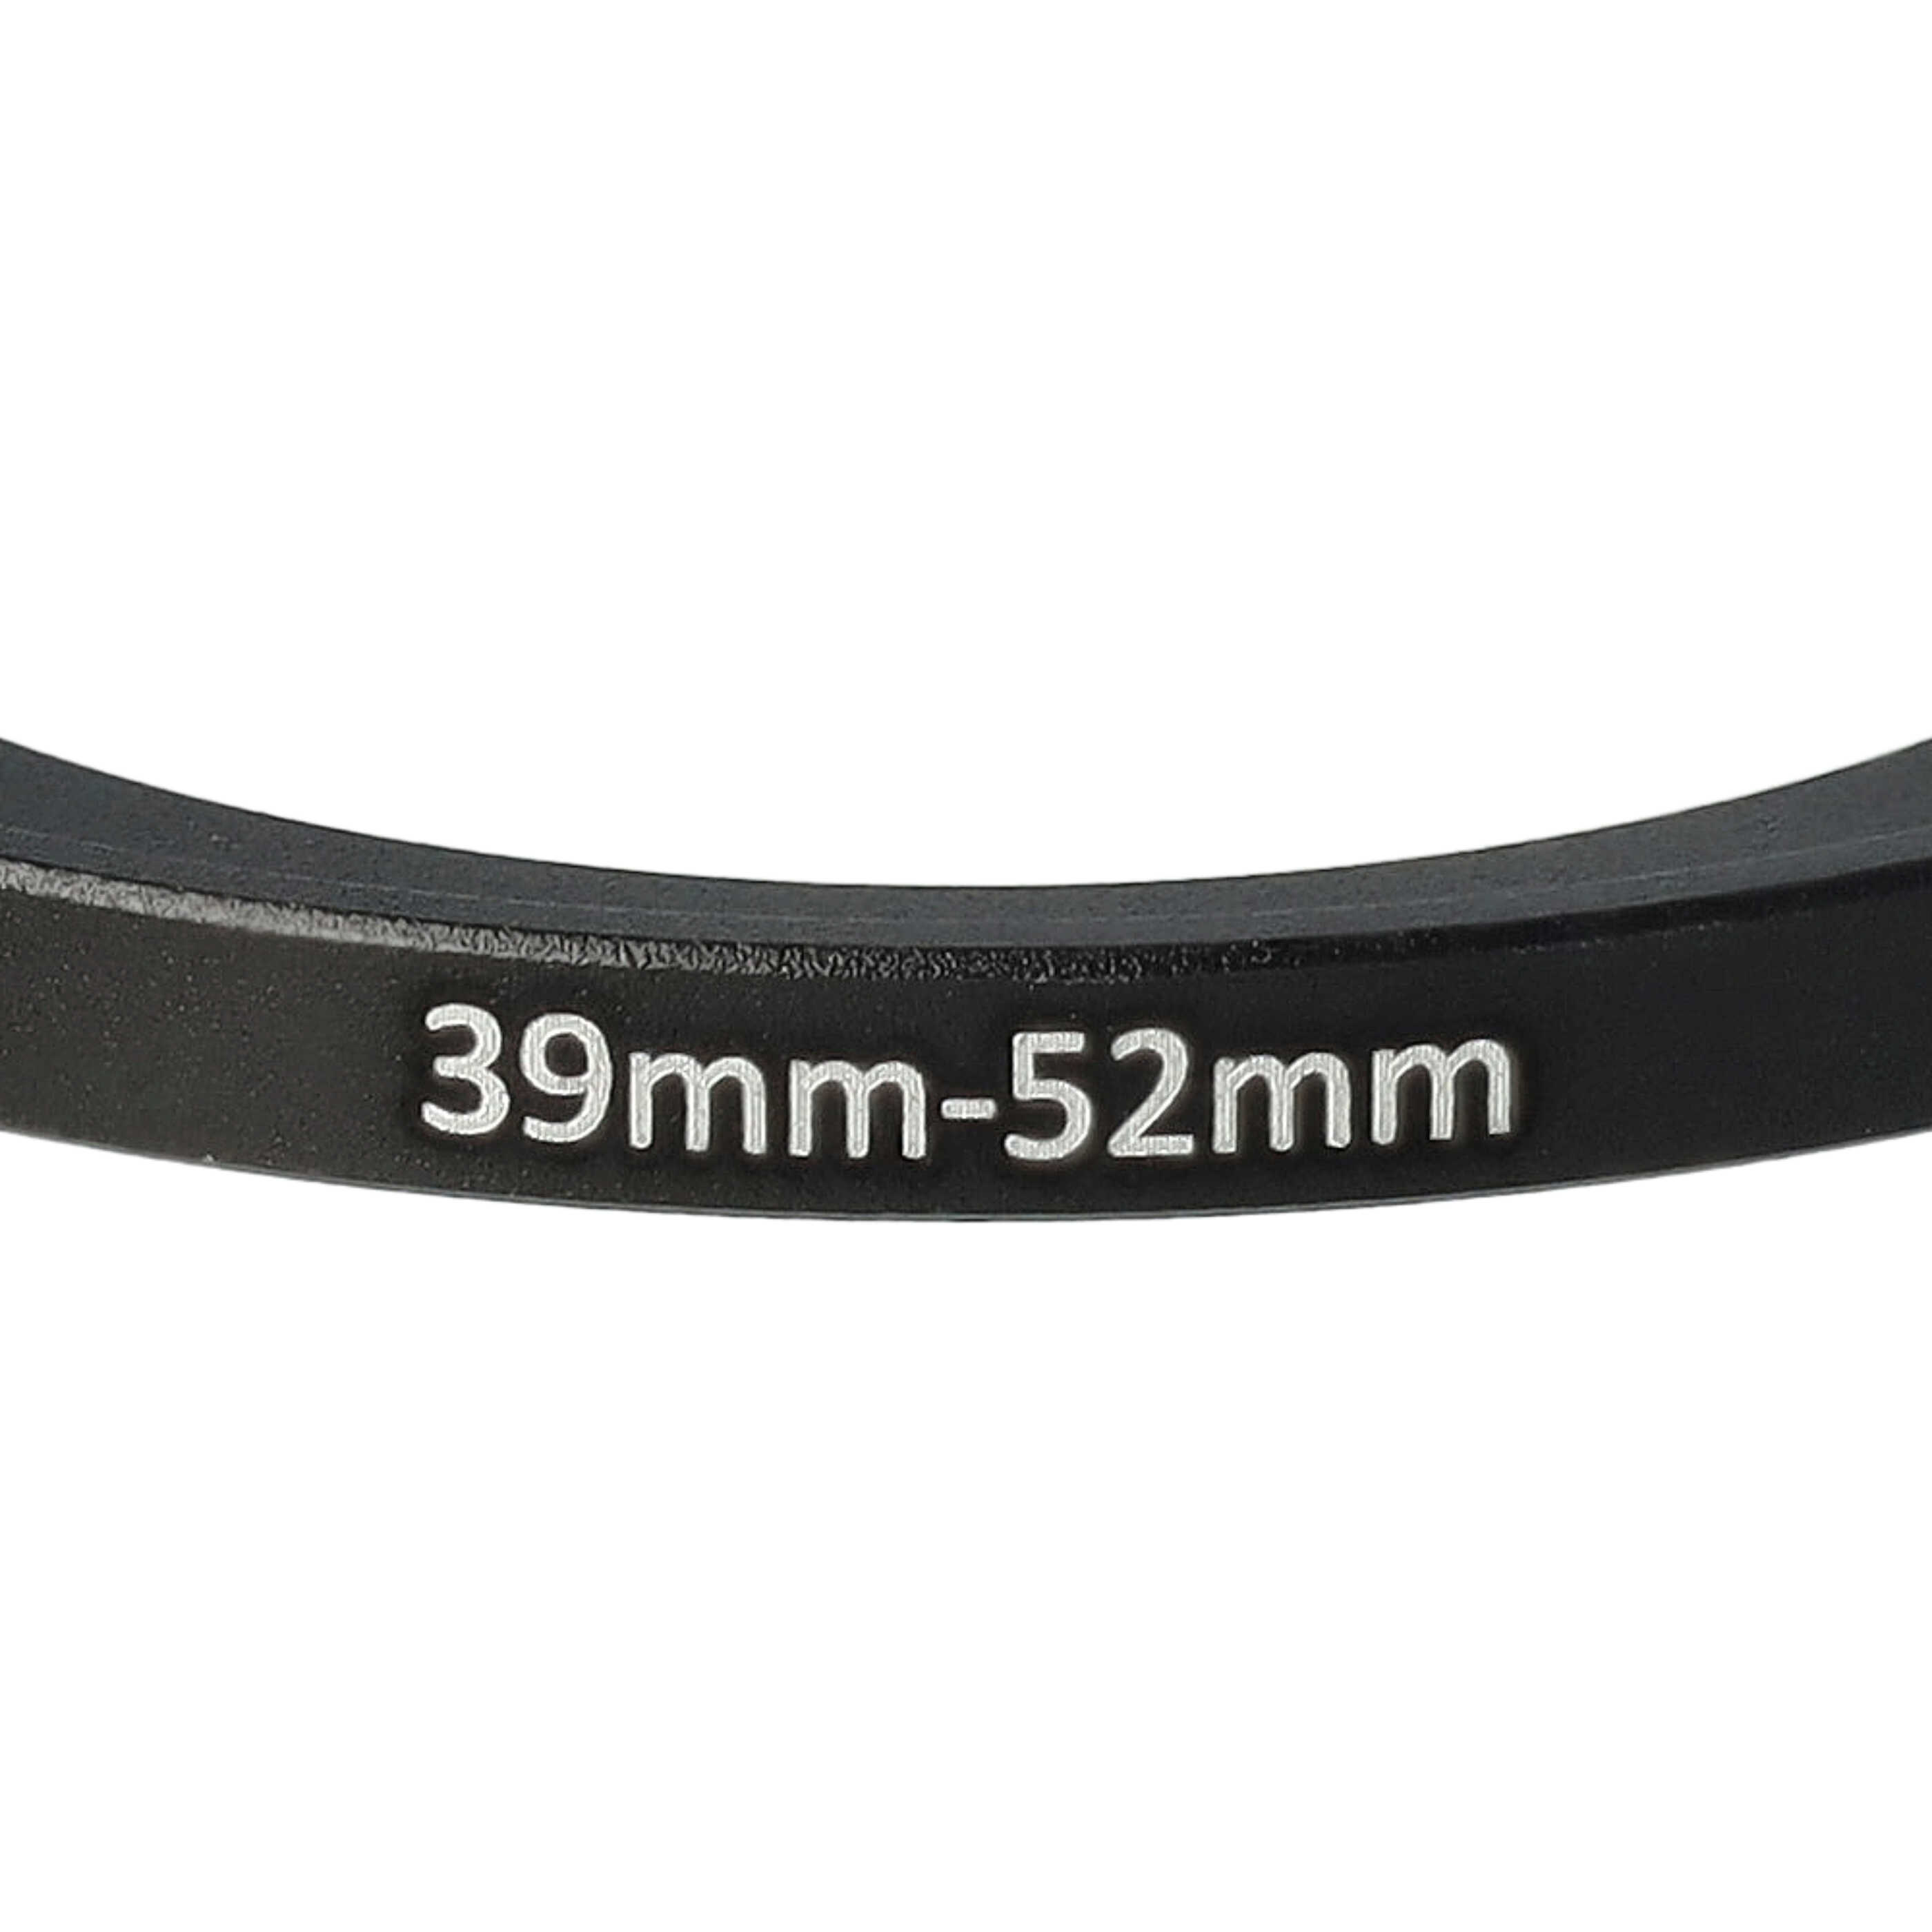 Step-Up-Ring Adapter 39 mm auf 52 mm passend für diverse Kamera-Objektive - Filteradapter